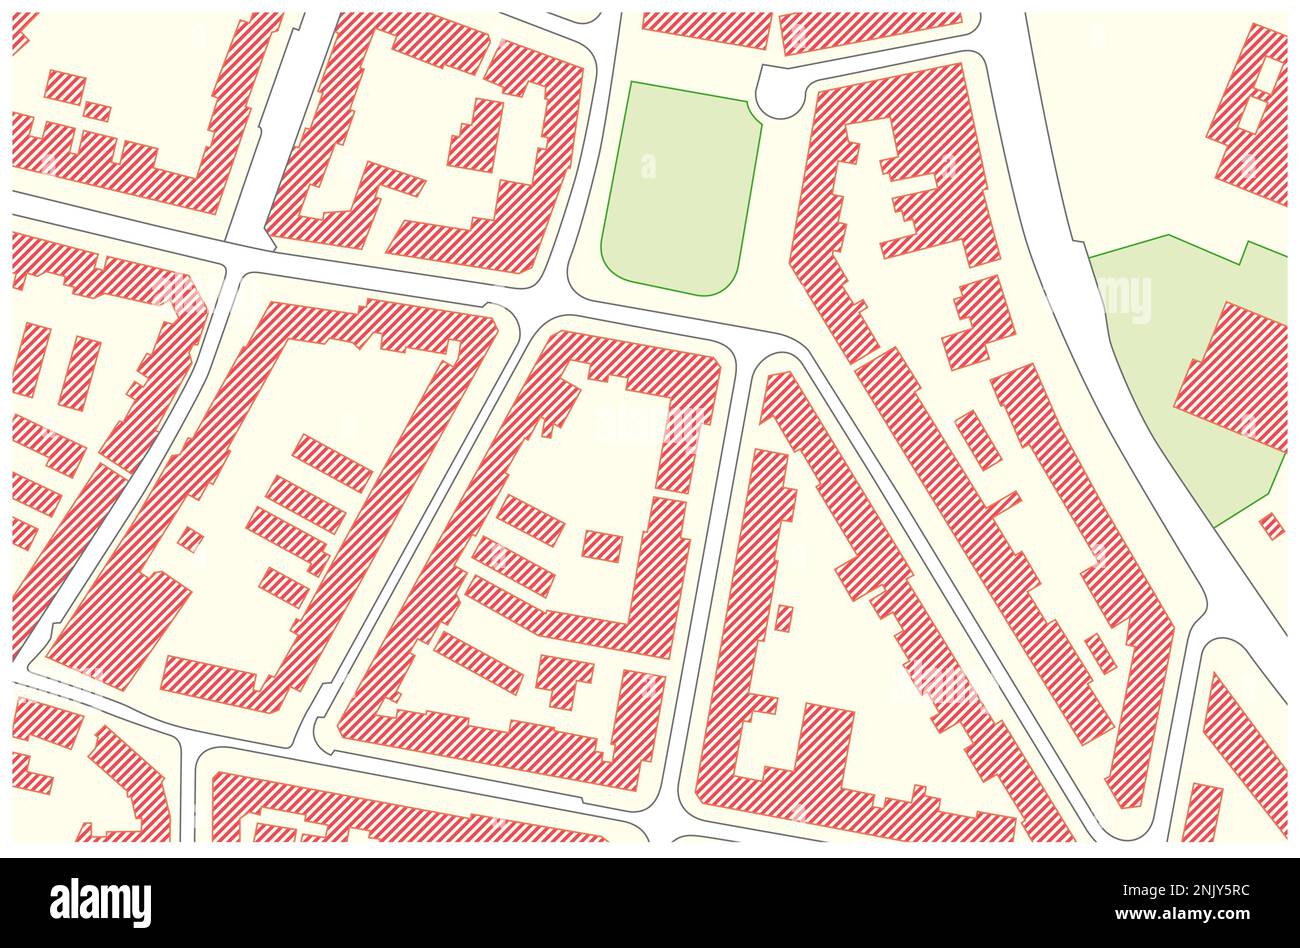 Carte cadastrale vectorielle imaginaire avec bâtiments et rues Banque D'Images